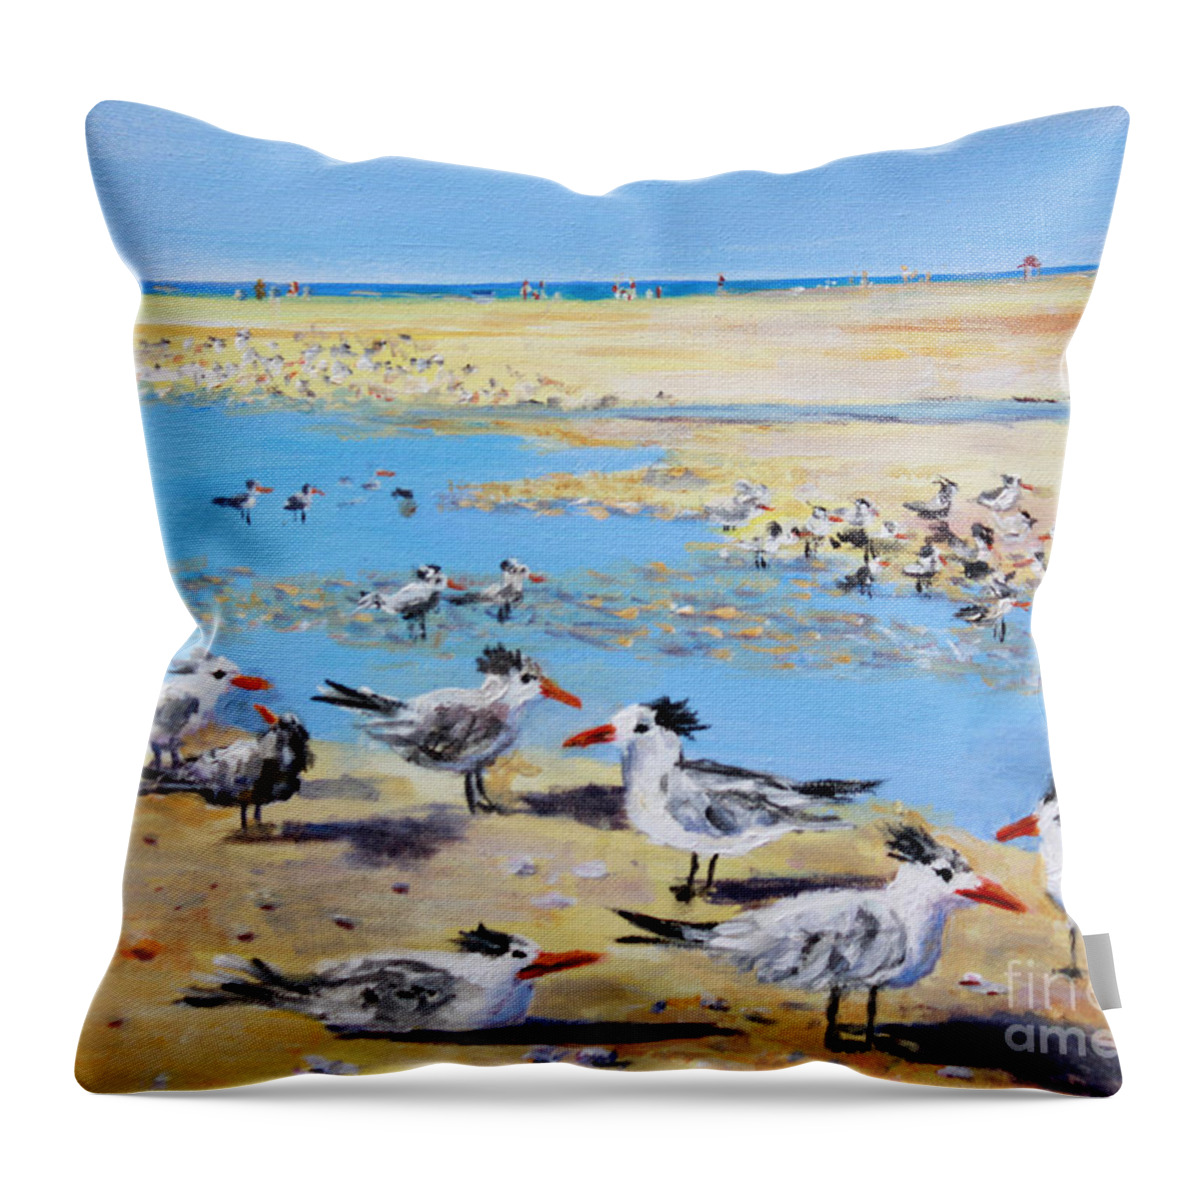 Siesta Key Sea Gulls Throw Pillow featuring the painting Sea Gulls Siesta Key Beach by Lou Ann Bagnall